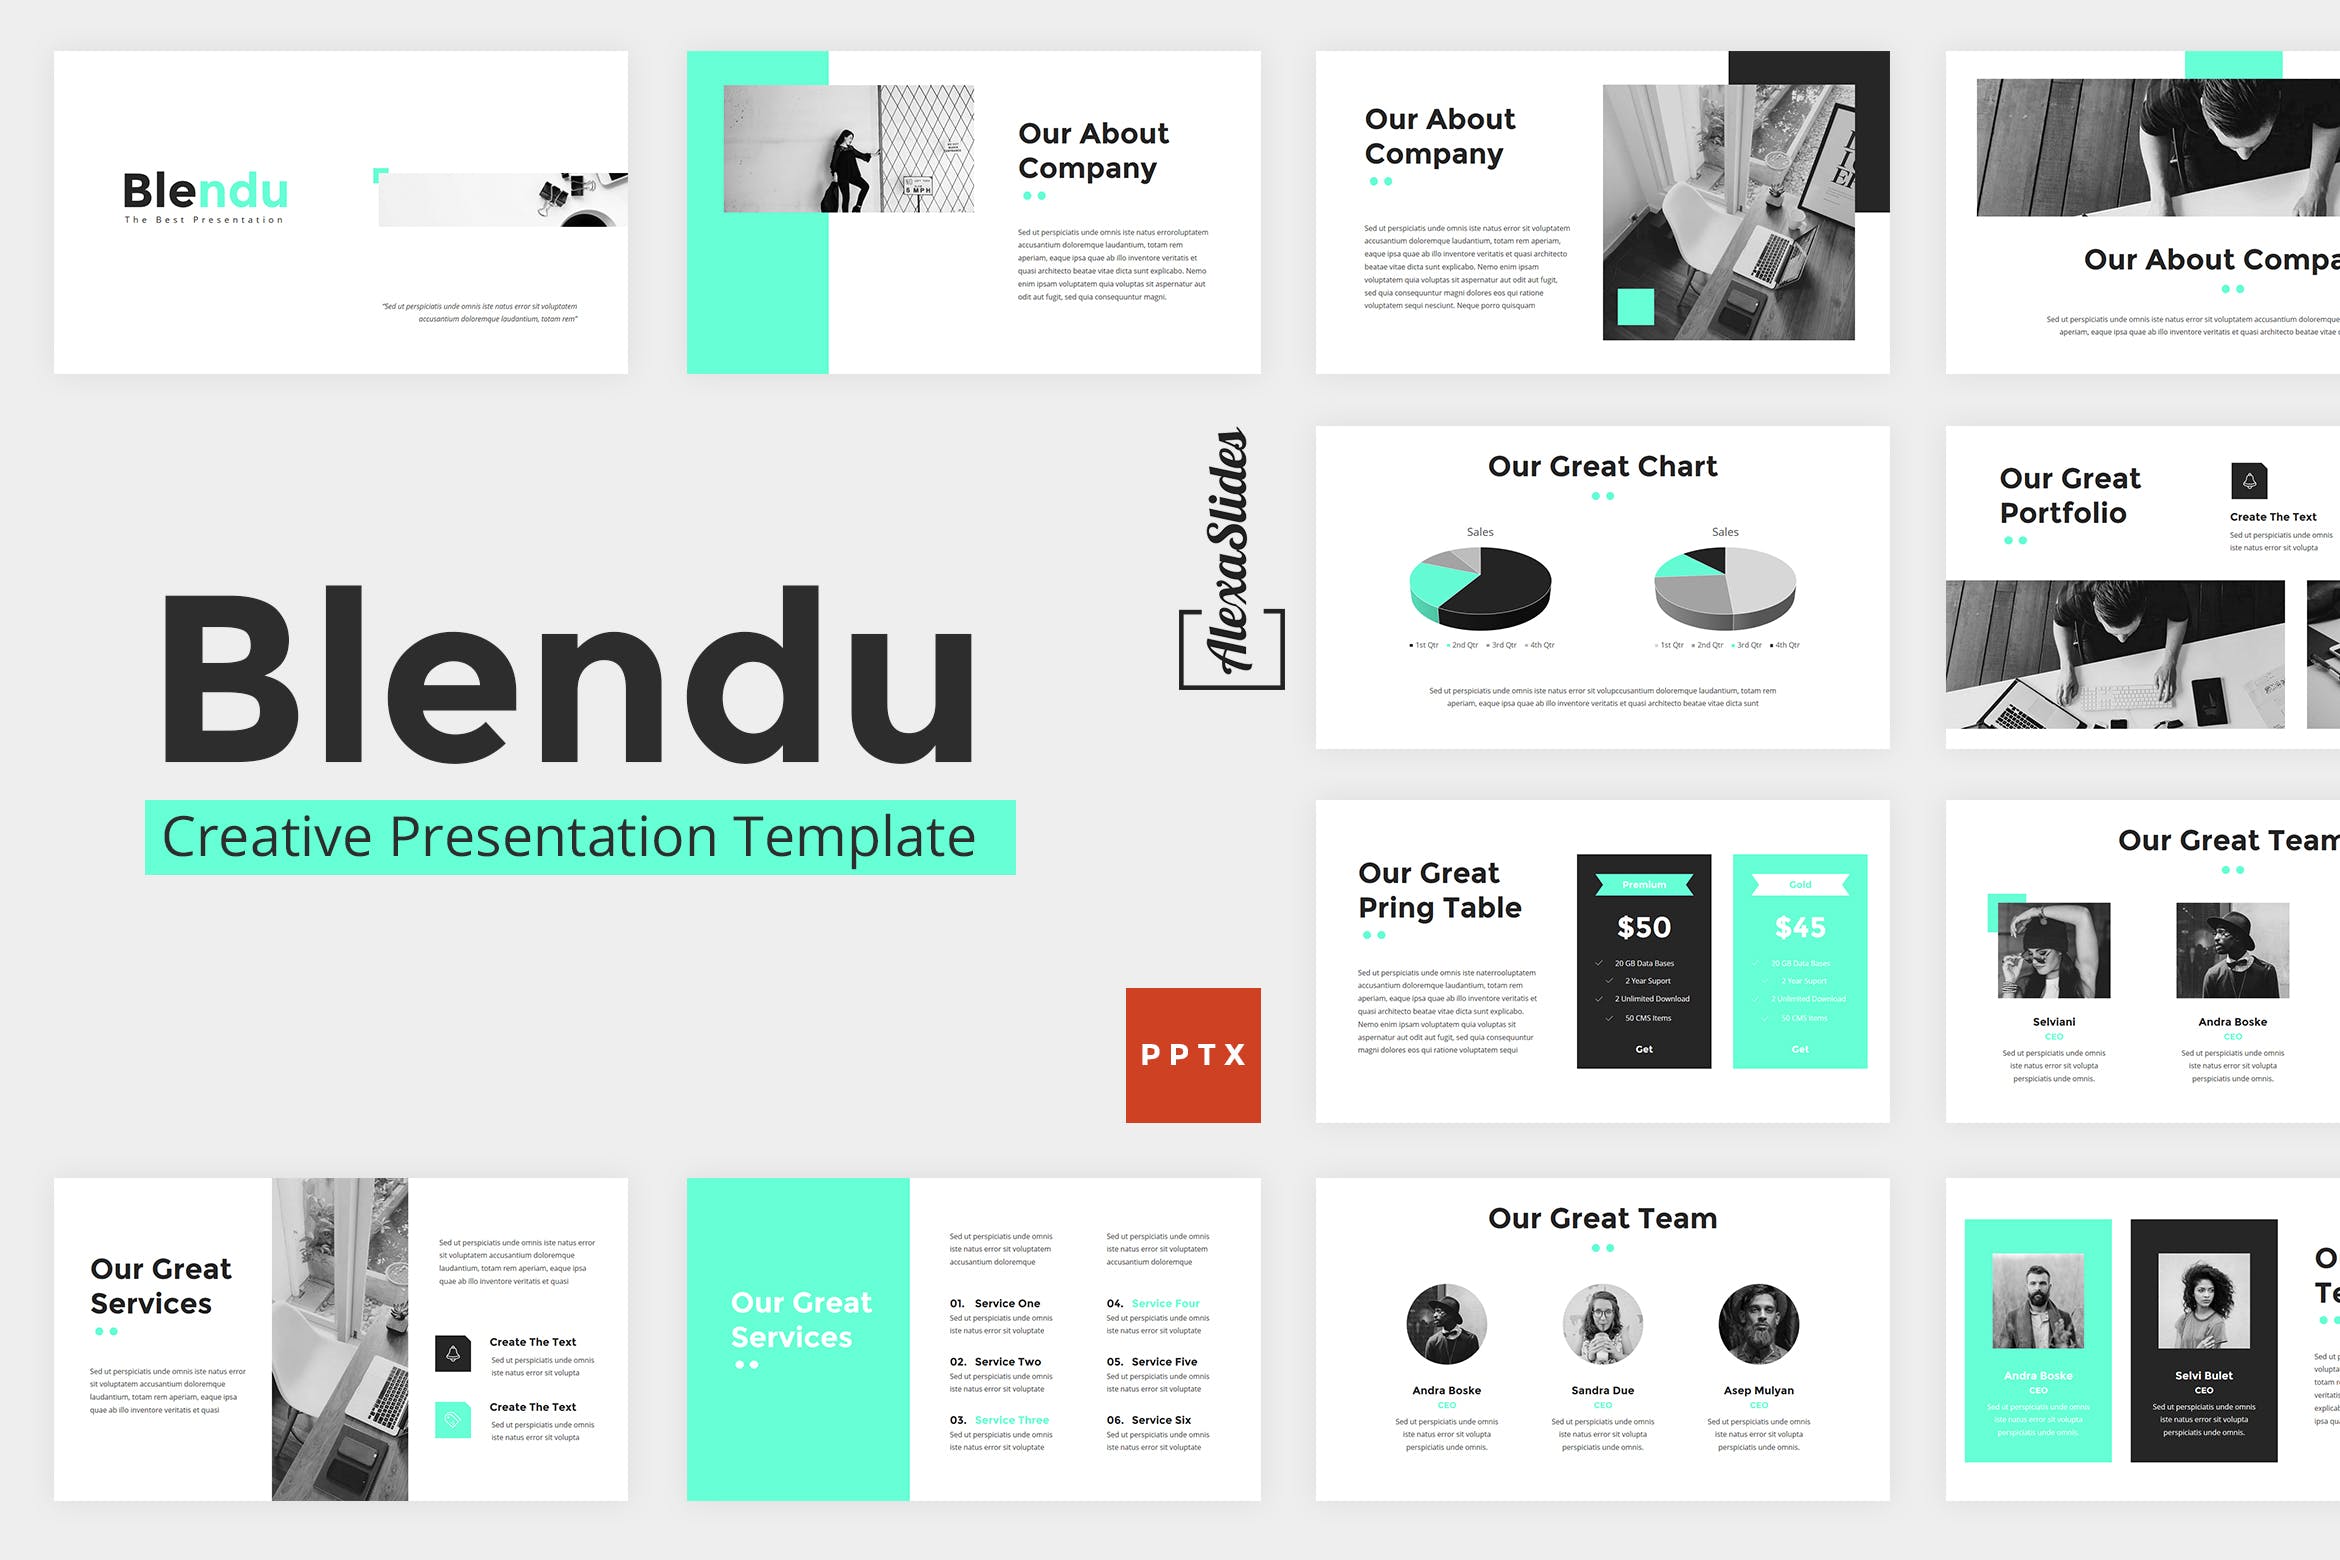 企业品牌营销商业展示幻灯片模版下载Blendu Powerpoint Presentation Template